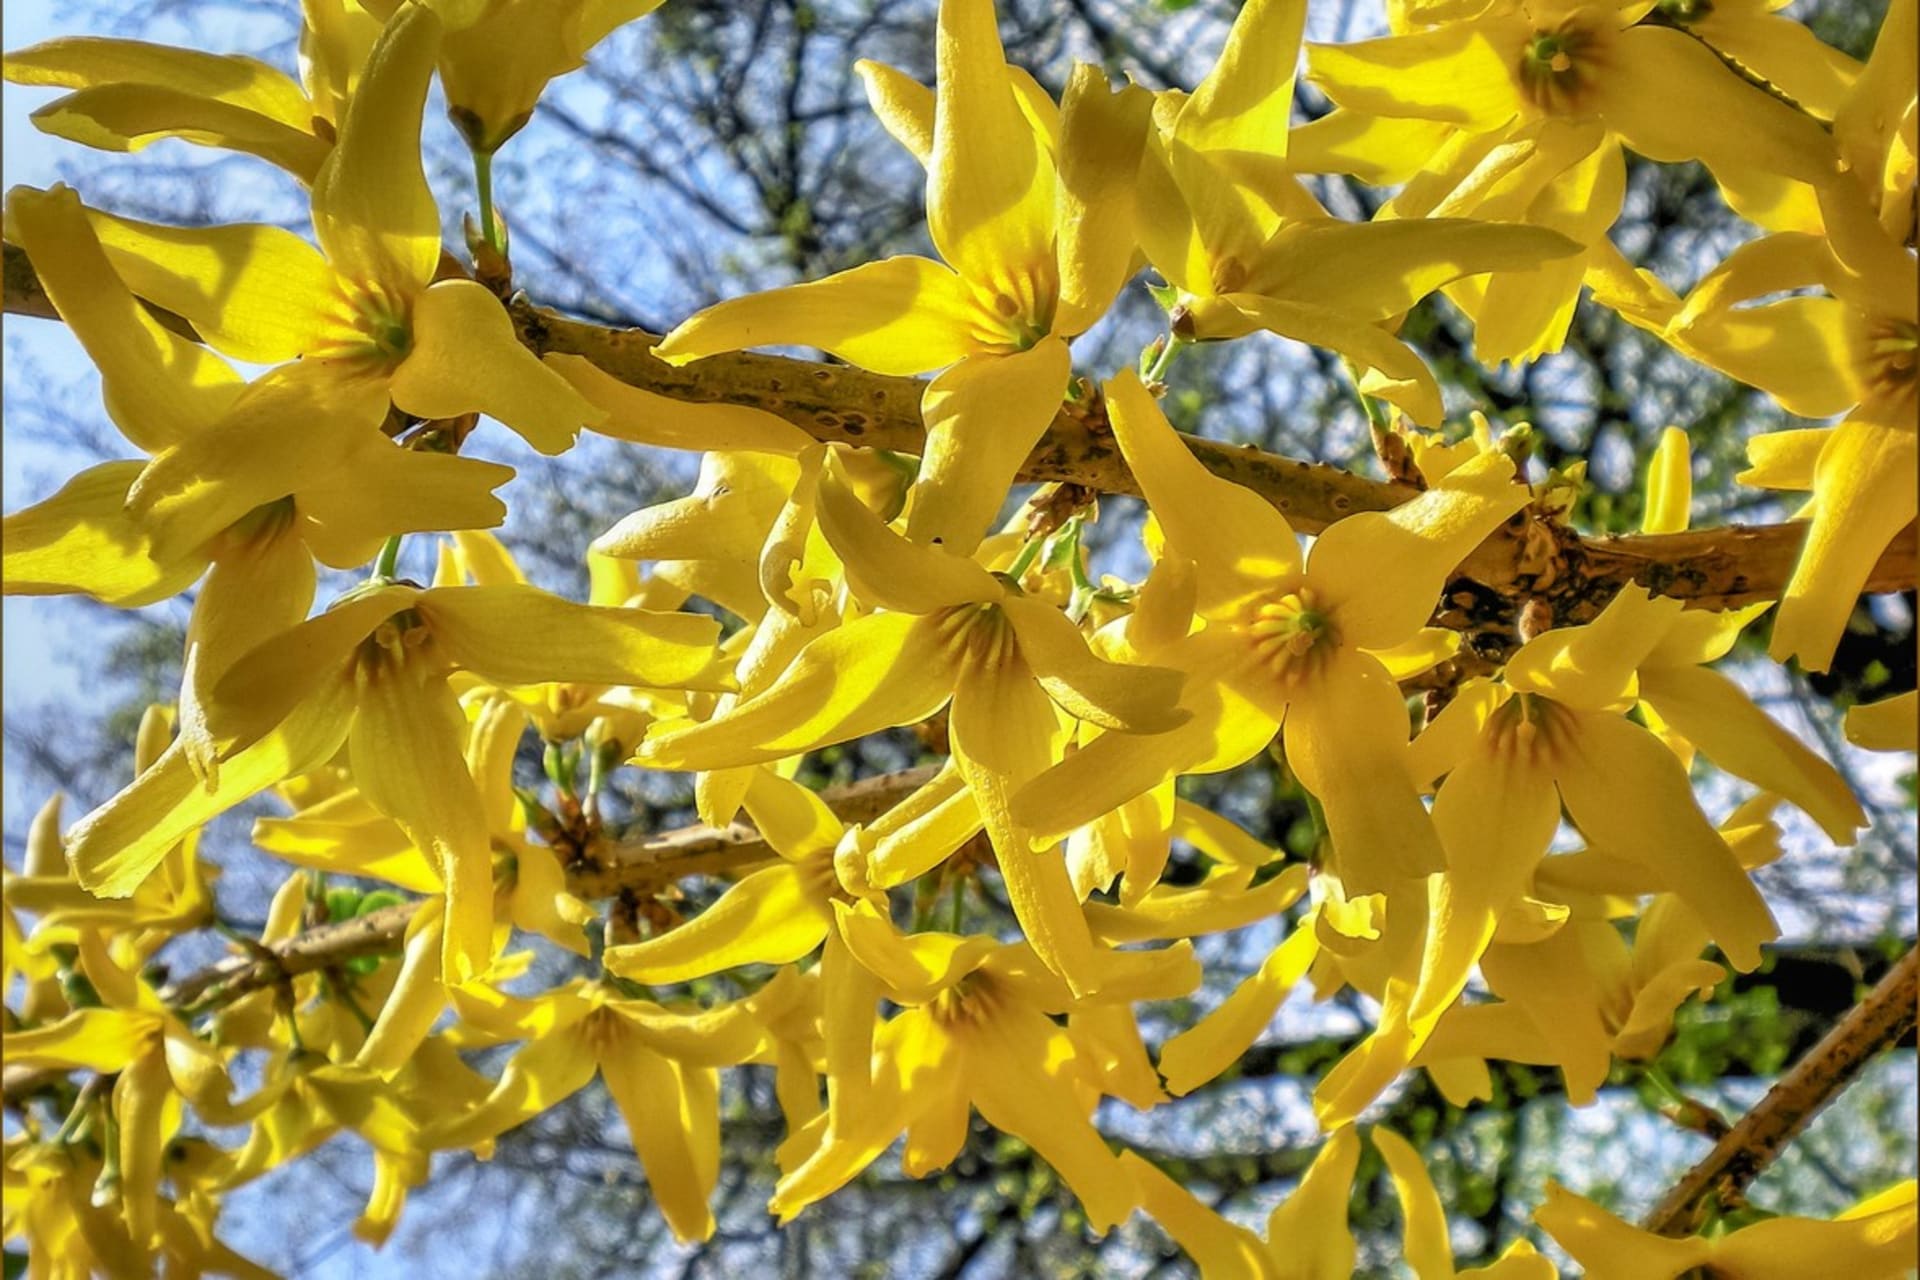 Zlatý dážď alebo forzýcia je jedným z najkrajších jarných kvitnúcich kríkov. Koncom marca, ešte pred objavením listov, vyrastajú na ohybných vetvách zlatobyle stovky žiarivých zlatožltých kvetov.